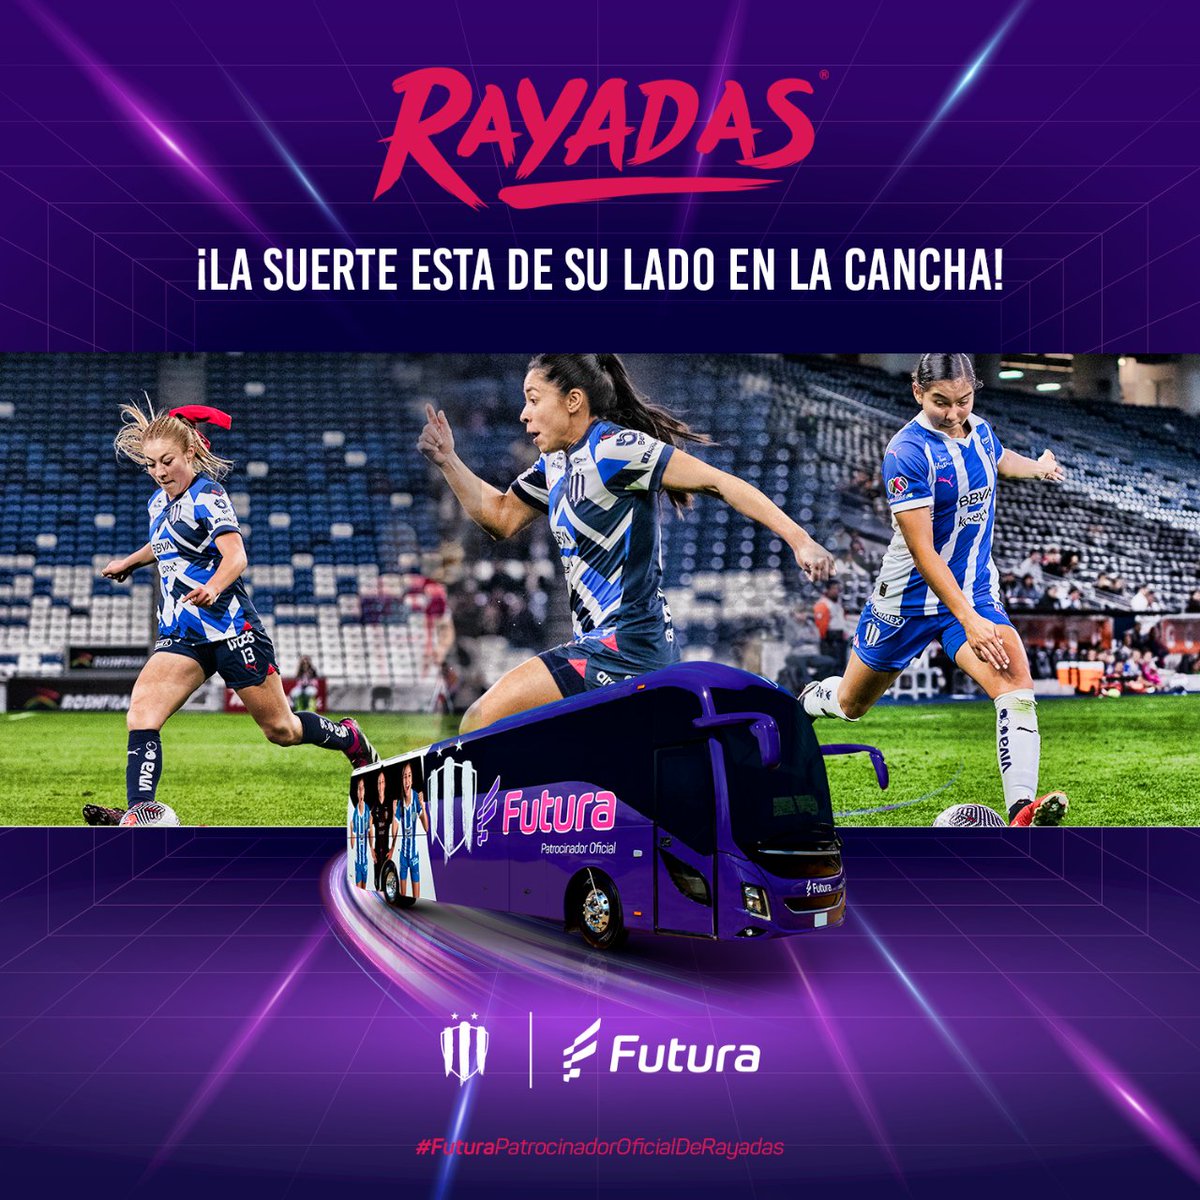 La grandeza está en su lado de la cancha !A GANAR!

⚽ vs Mazatlán
⏰ 19 hrs
🏟 Estadio Olímpico Benito Juárez

➡ i.mtr.cool/nskuwfyhff

#FuturaPatrocinadorOficialDeRayadas #FuturaTeLleva #UniendoMéxico #Rayadas #ArribaElMonterrey #EnLaVidaYEnLaCancha #Futura #FutbolFemenil